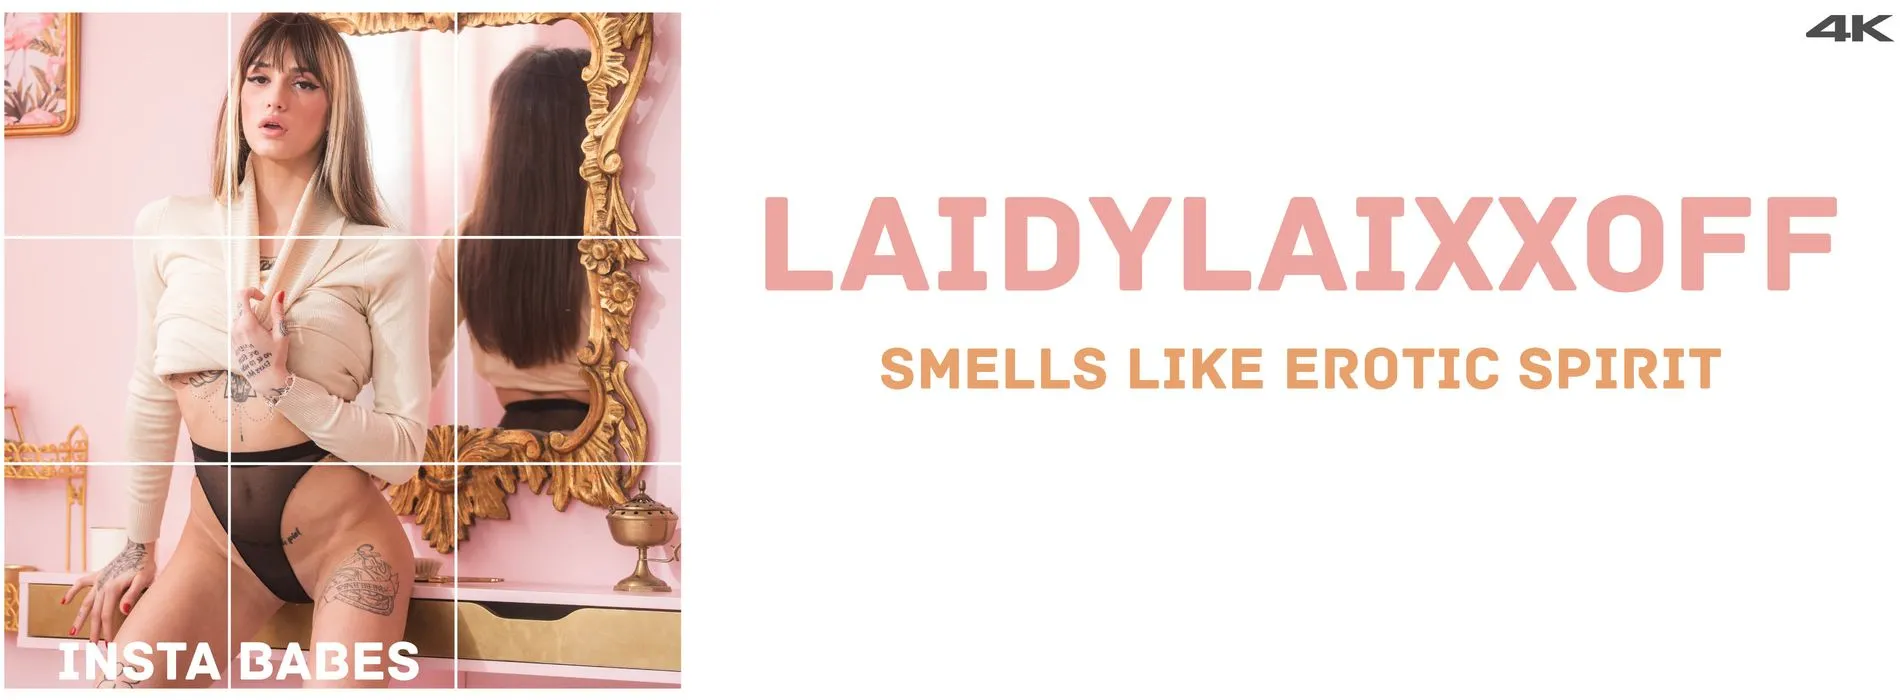 Laidylaixxoff Smells Like Erotic Spirit